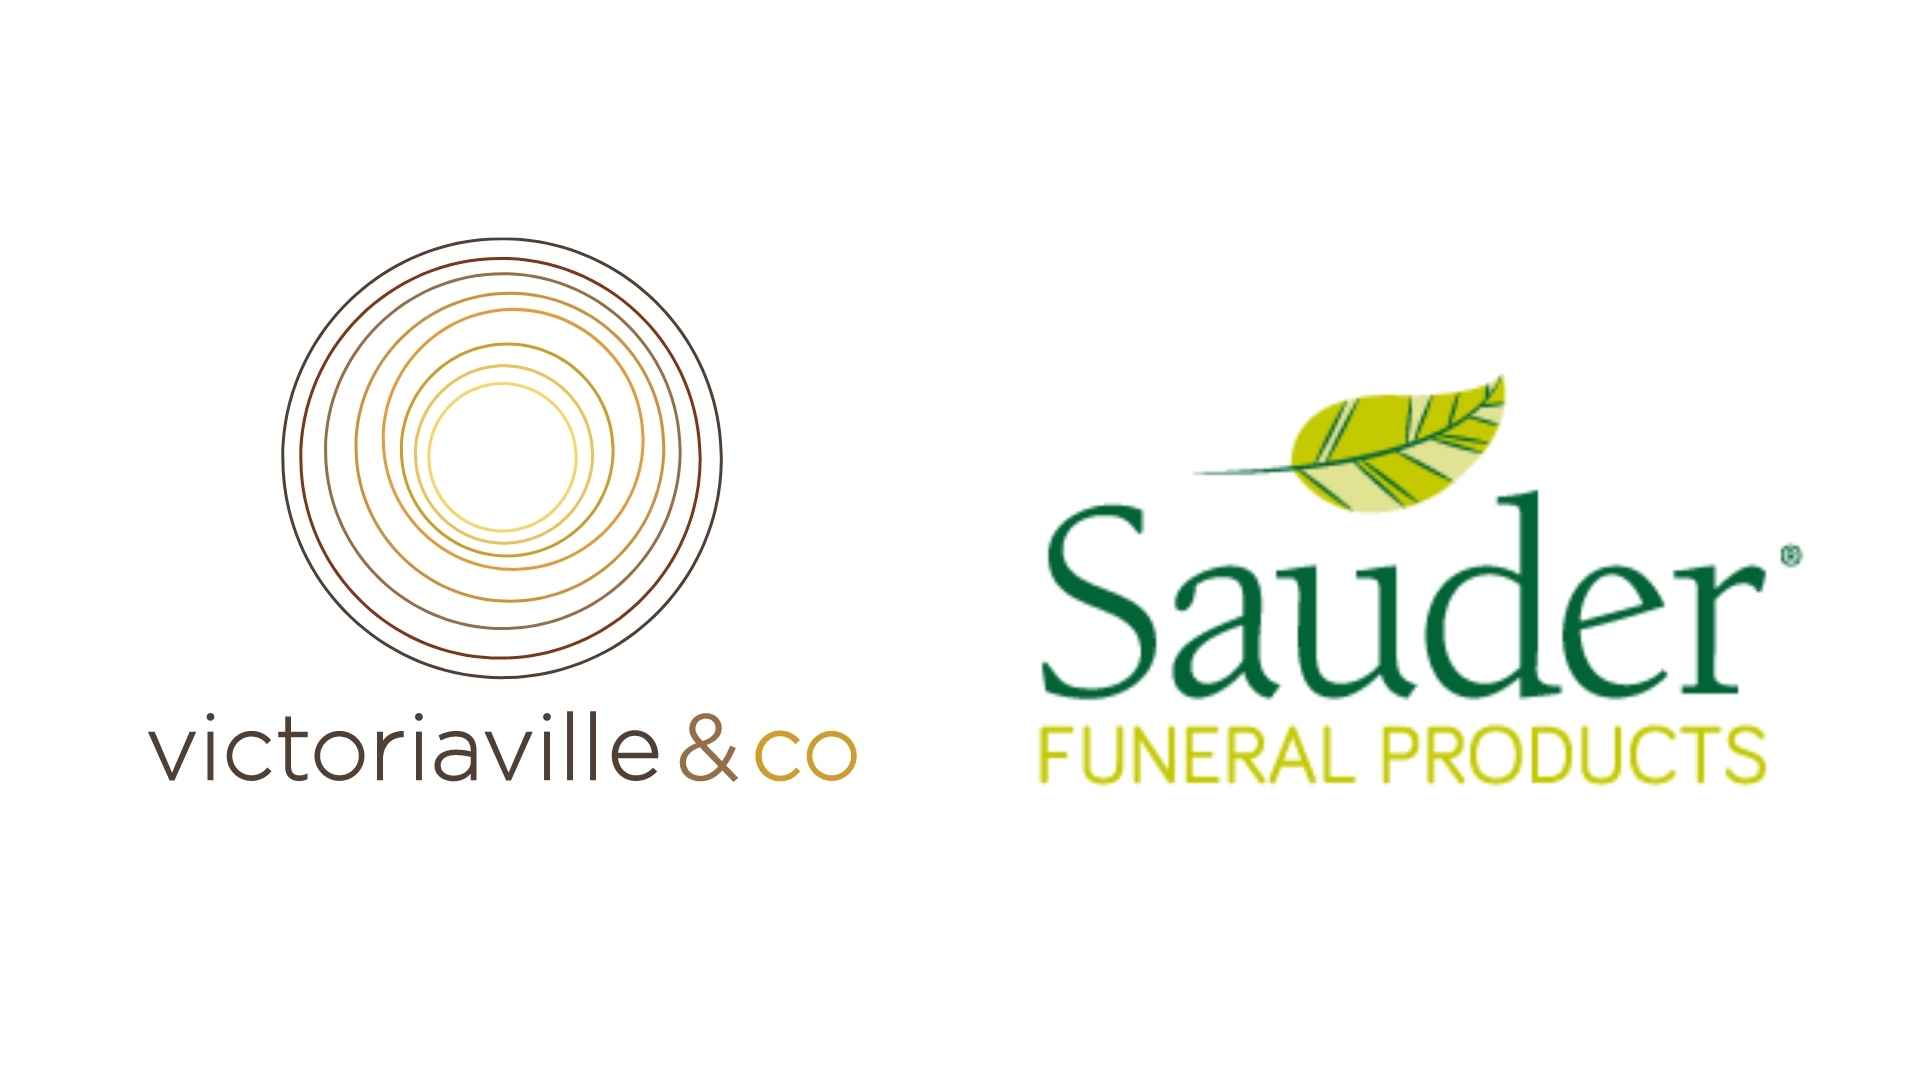 Victoriaville & Co. et Sauder Funeral Products | Investissement et partenariat stratégiques